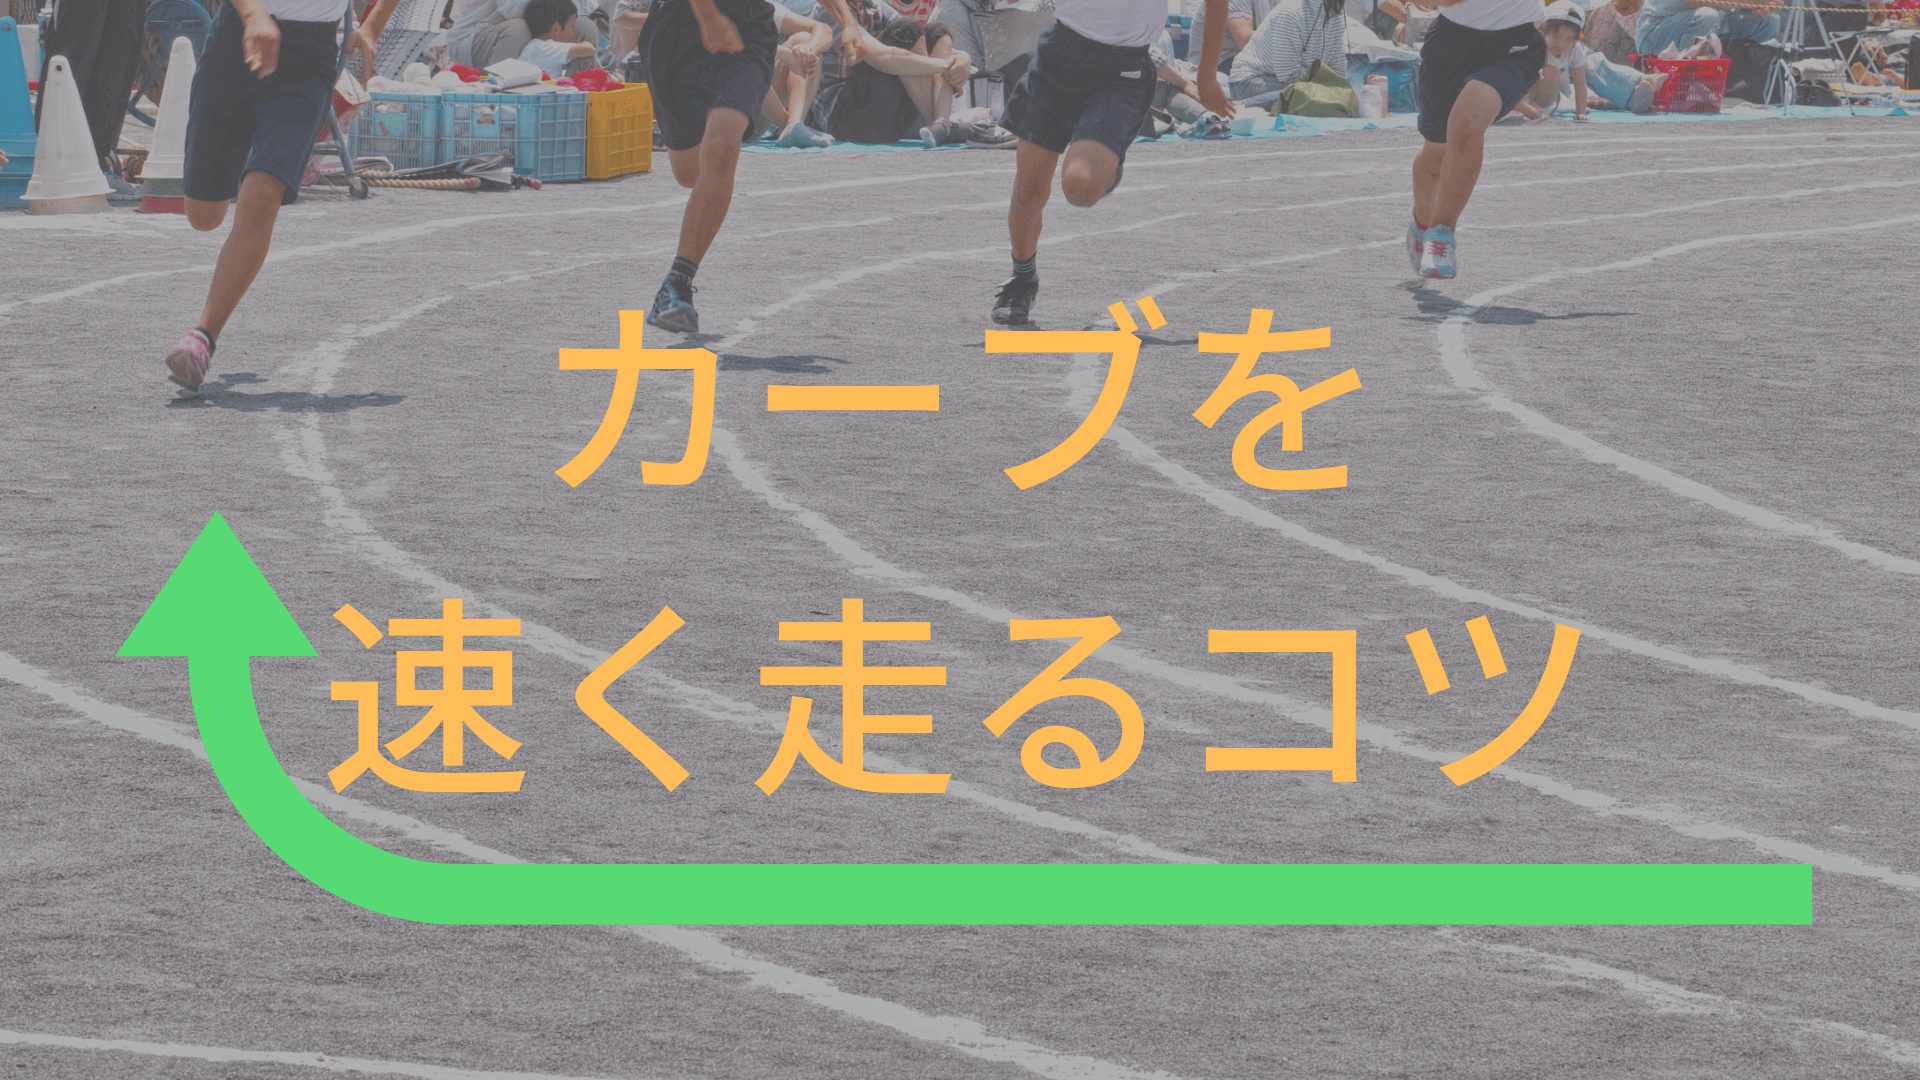 陸上全国７位直伝 運動会でカーブを上手く走るコツは頭を地面に対して真っ直ぐにすること 東京で小学生の足を確実に速くするならgoogle 4 9の陸上アカデミア